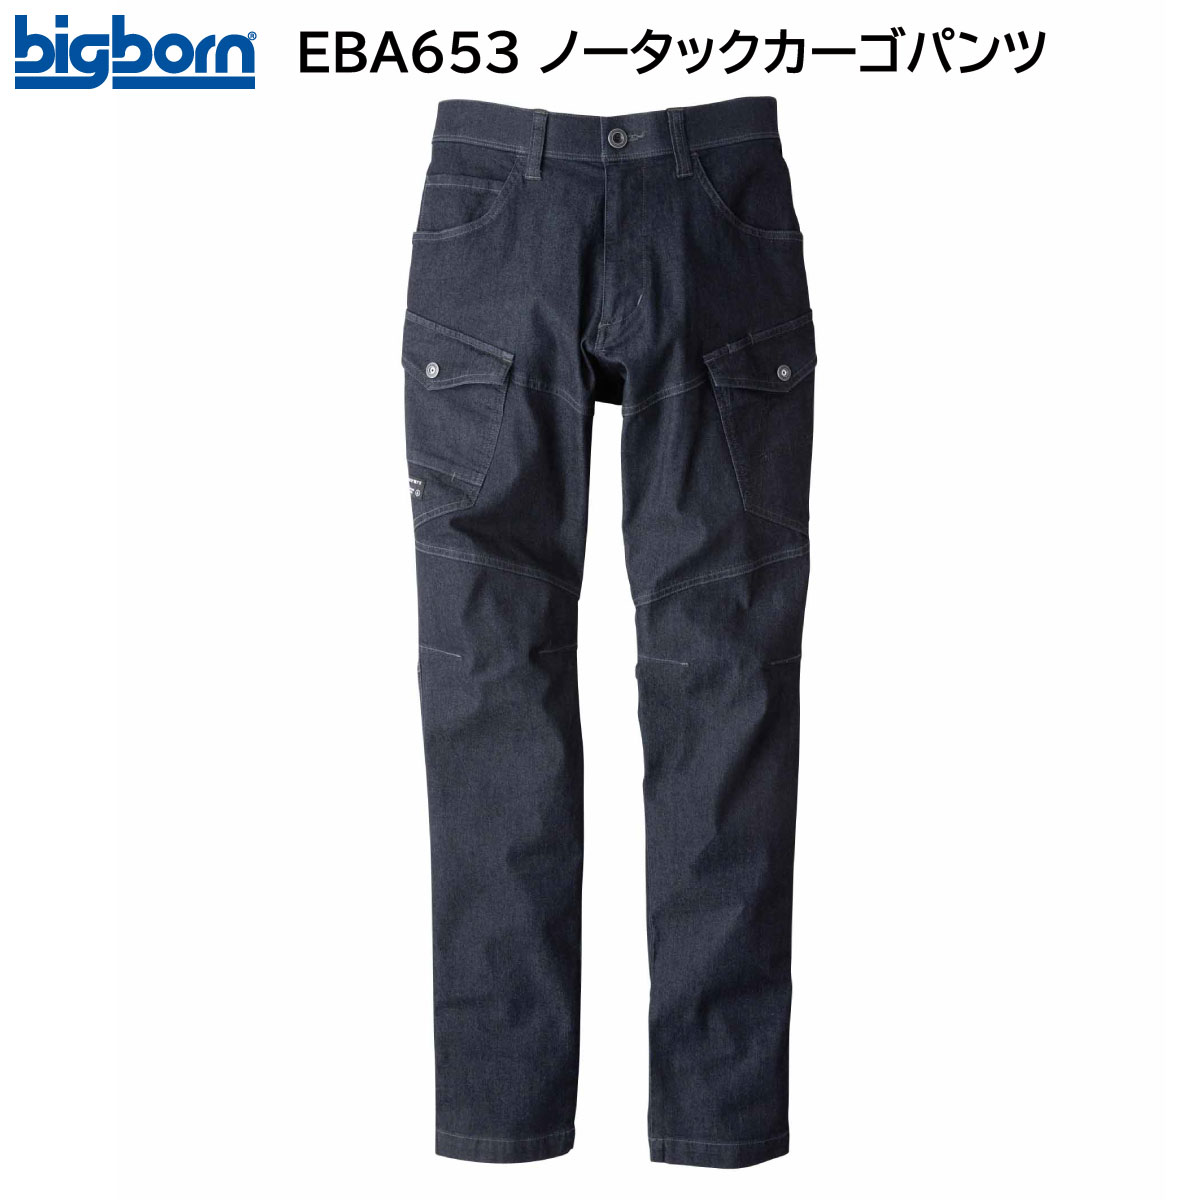 ノータックカーゴパンツ EBA653 S〜EL(3L) ビッグボーン bigborn 春夏用 インディゴ